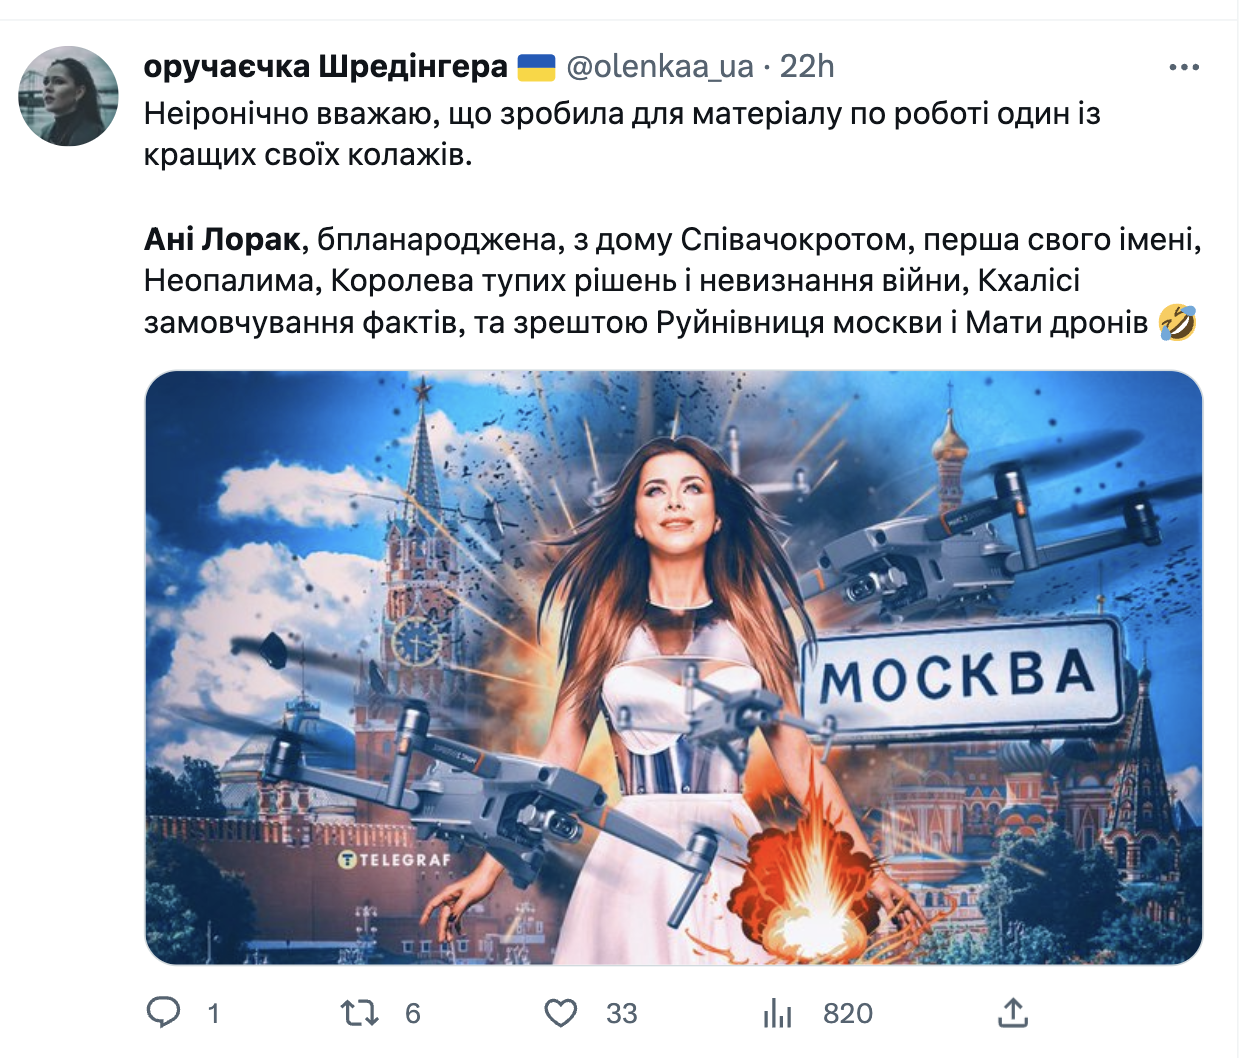 "Птичка хотела расправить крылья": Ани Лорак стала героиней забавного видео после атаки дронов на Москву